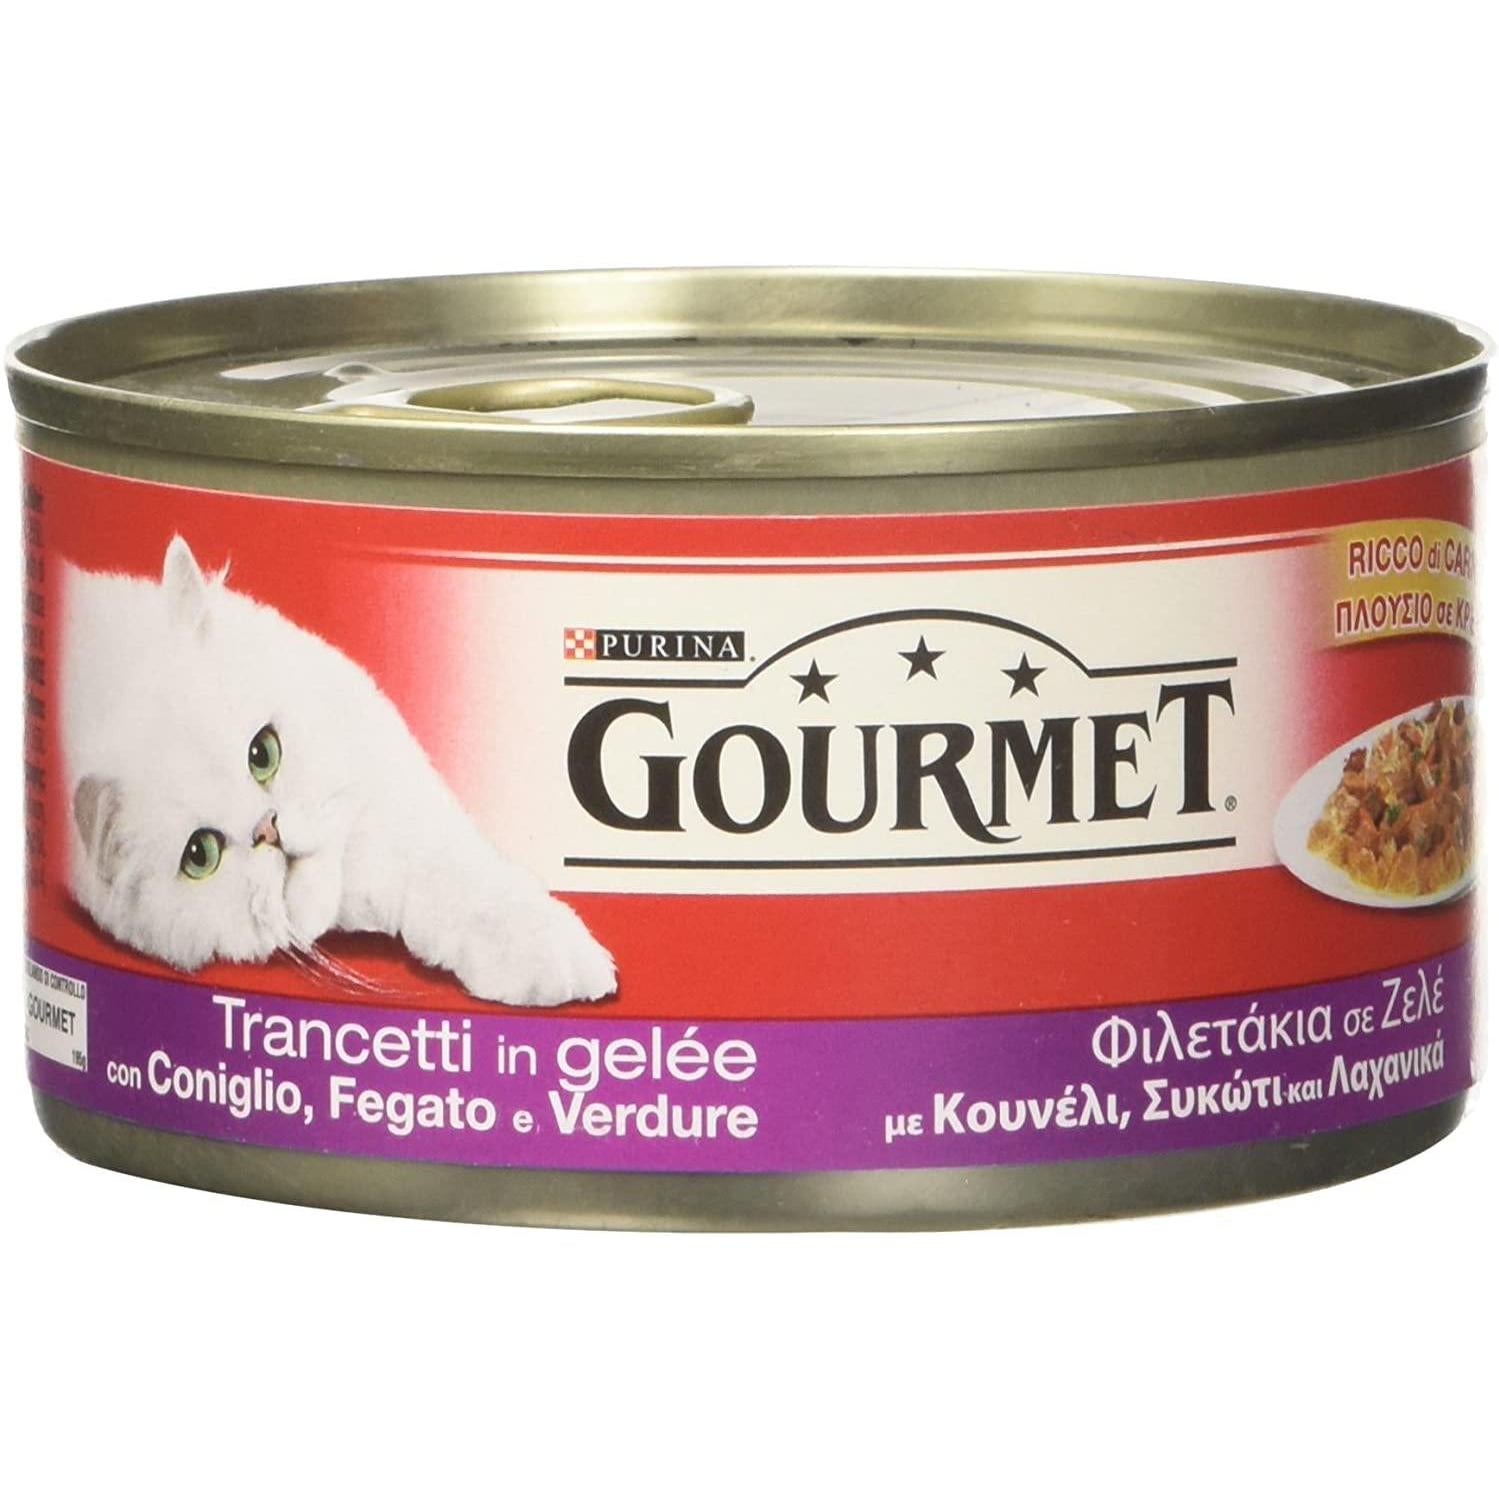 Nestle' Purina - Gourmet - Trancetti Coniglio Fegato e Verdure 1 Barattolo 195,00 gr